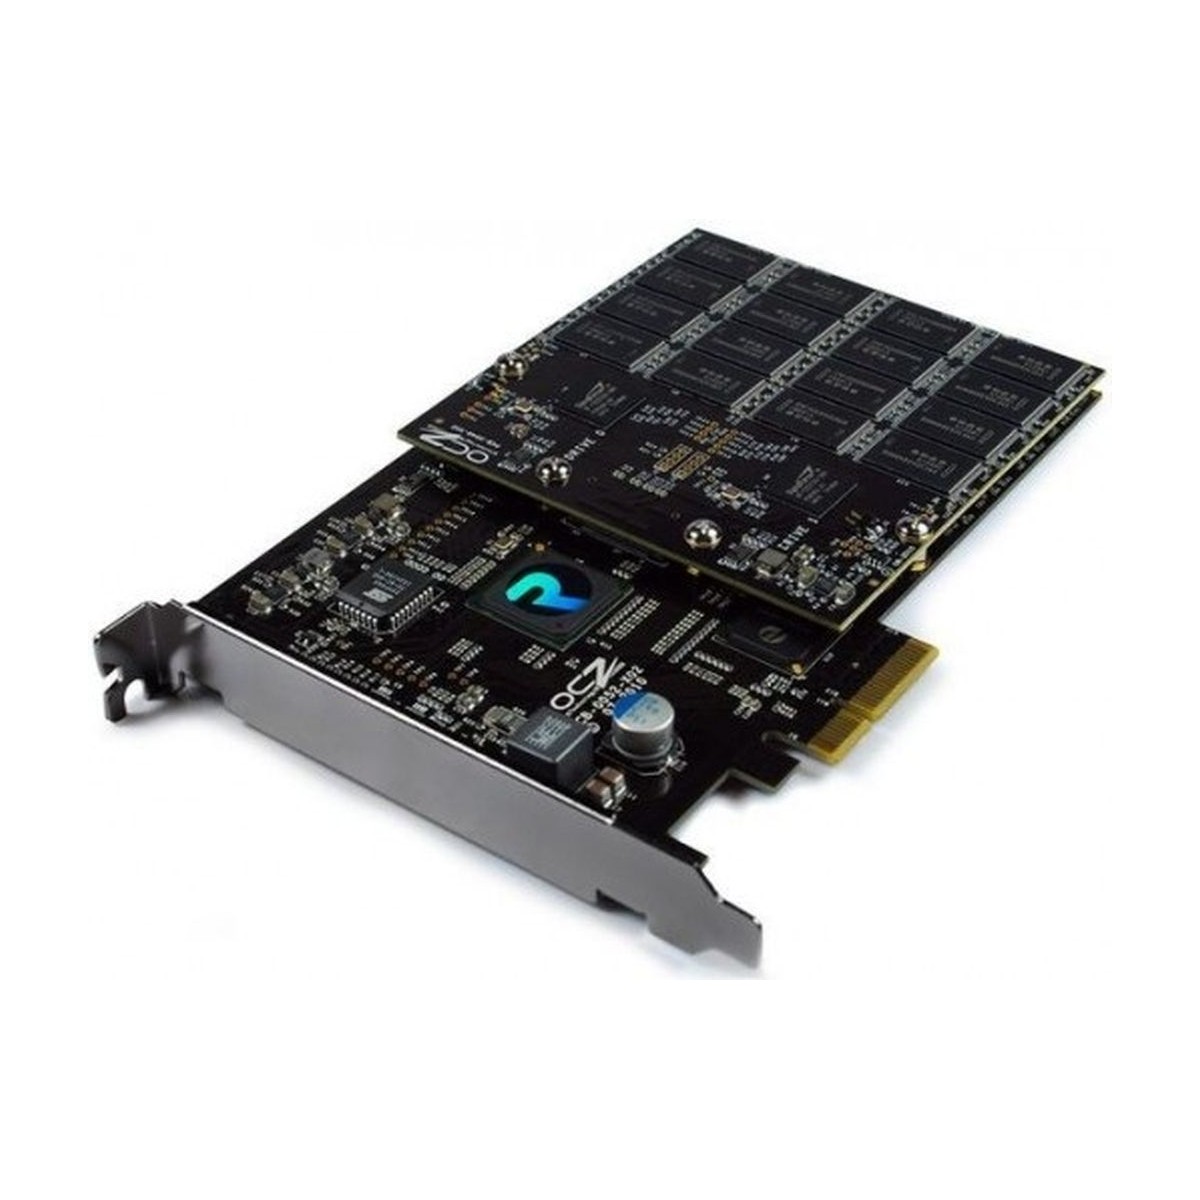 DYSK OCZ REVODRIVE 160GB SSD PCB-0052-X02